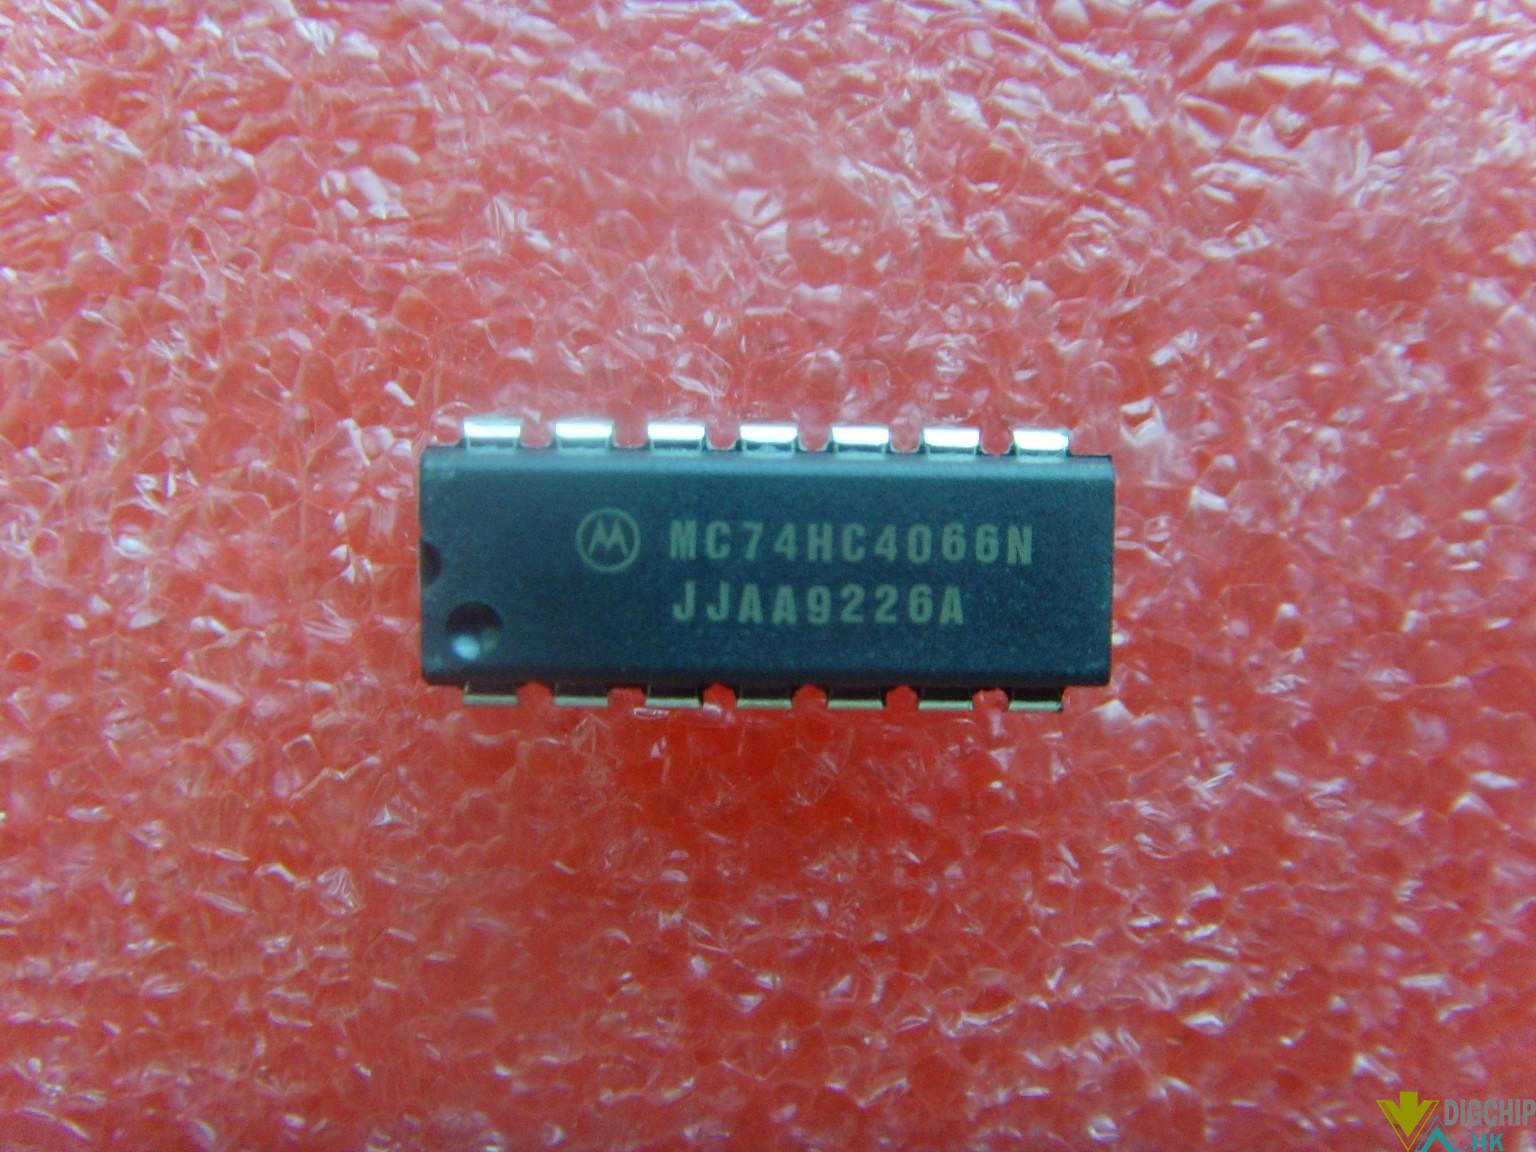 MC74HC4066N